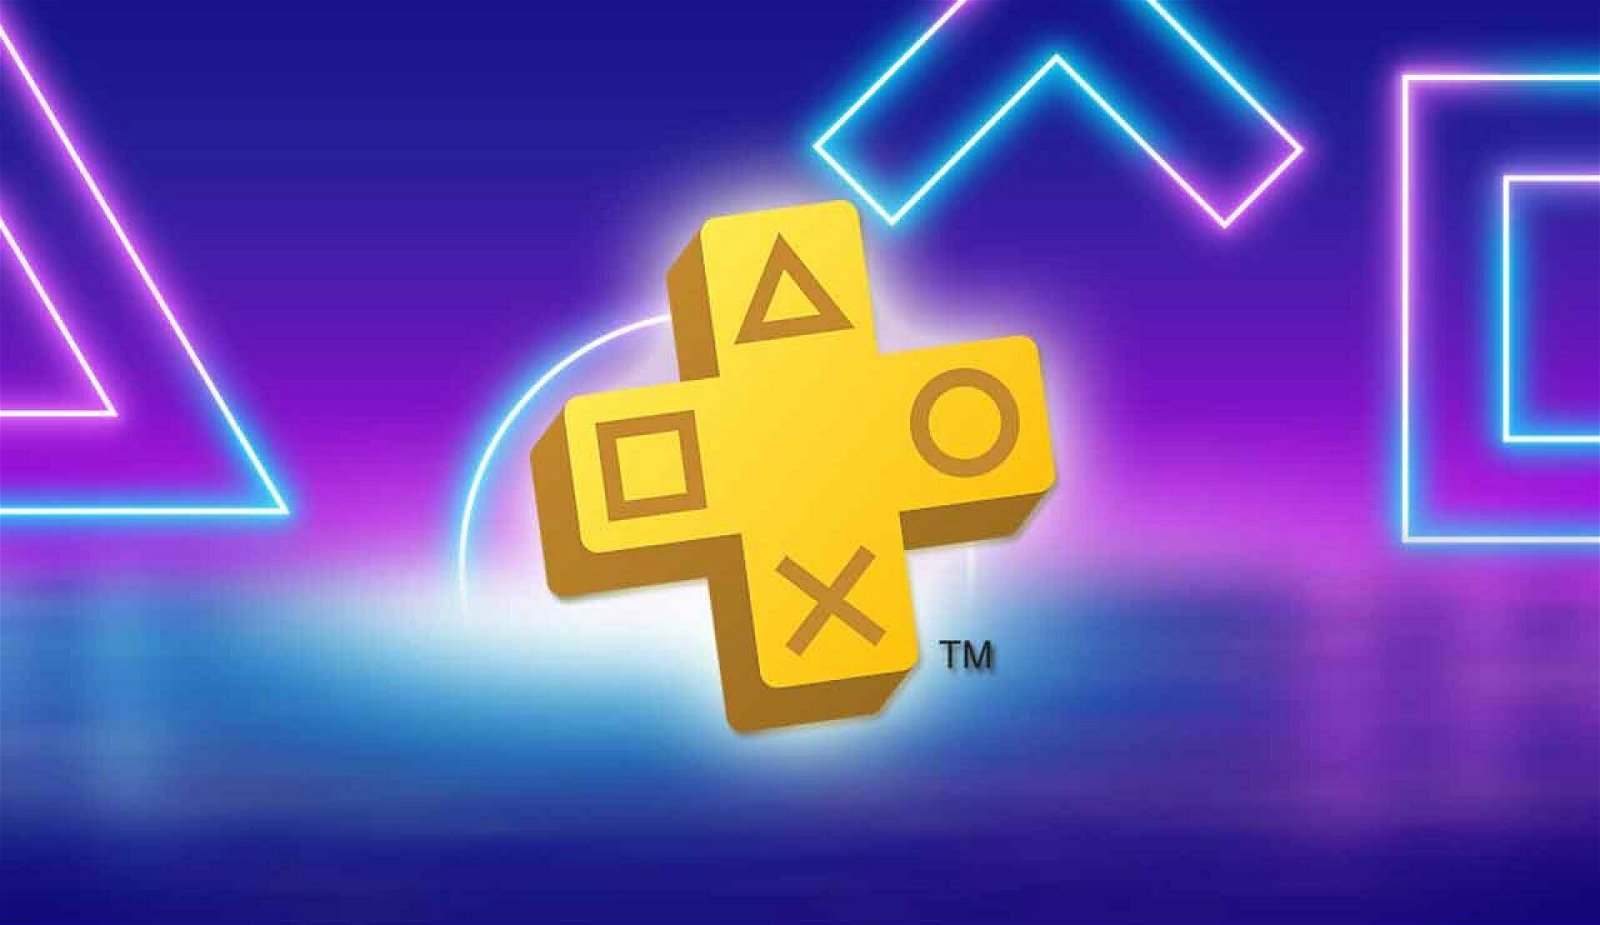 iannzits on X: O PlayStation Plus tá com uma promoção válida até 5 de  março na assinatura de 1 mês dos planos Deluxe, Extra ou Essential. O  PRIMEIRO MÊS do plano Essential